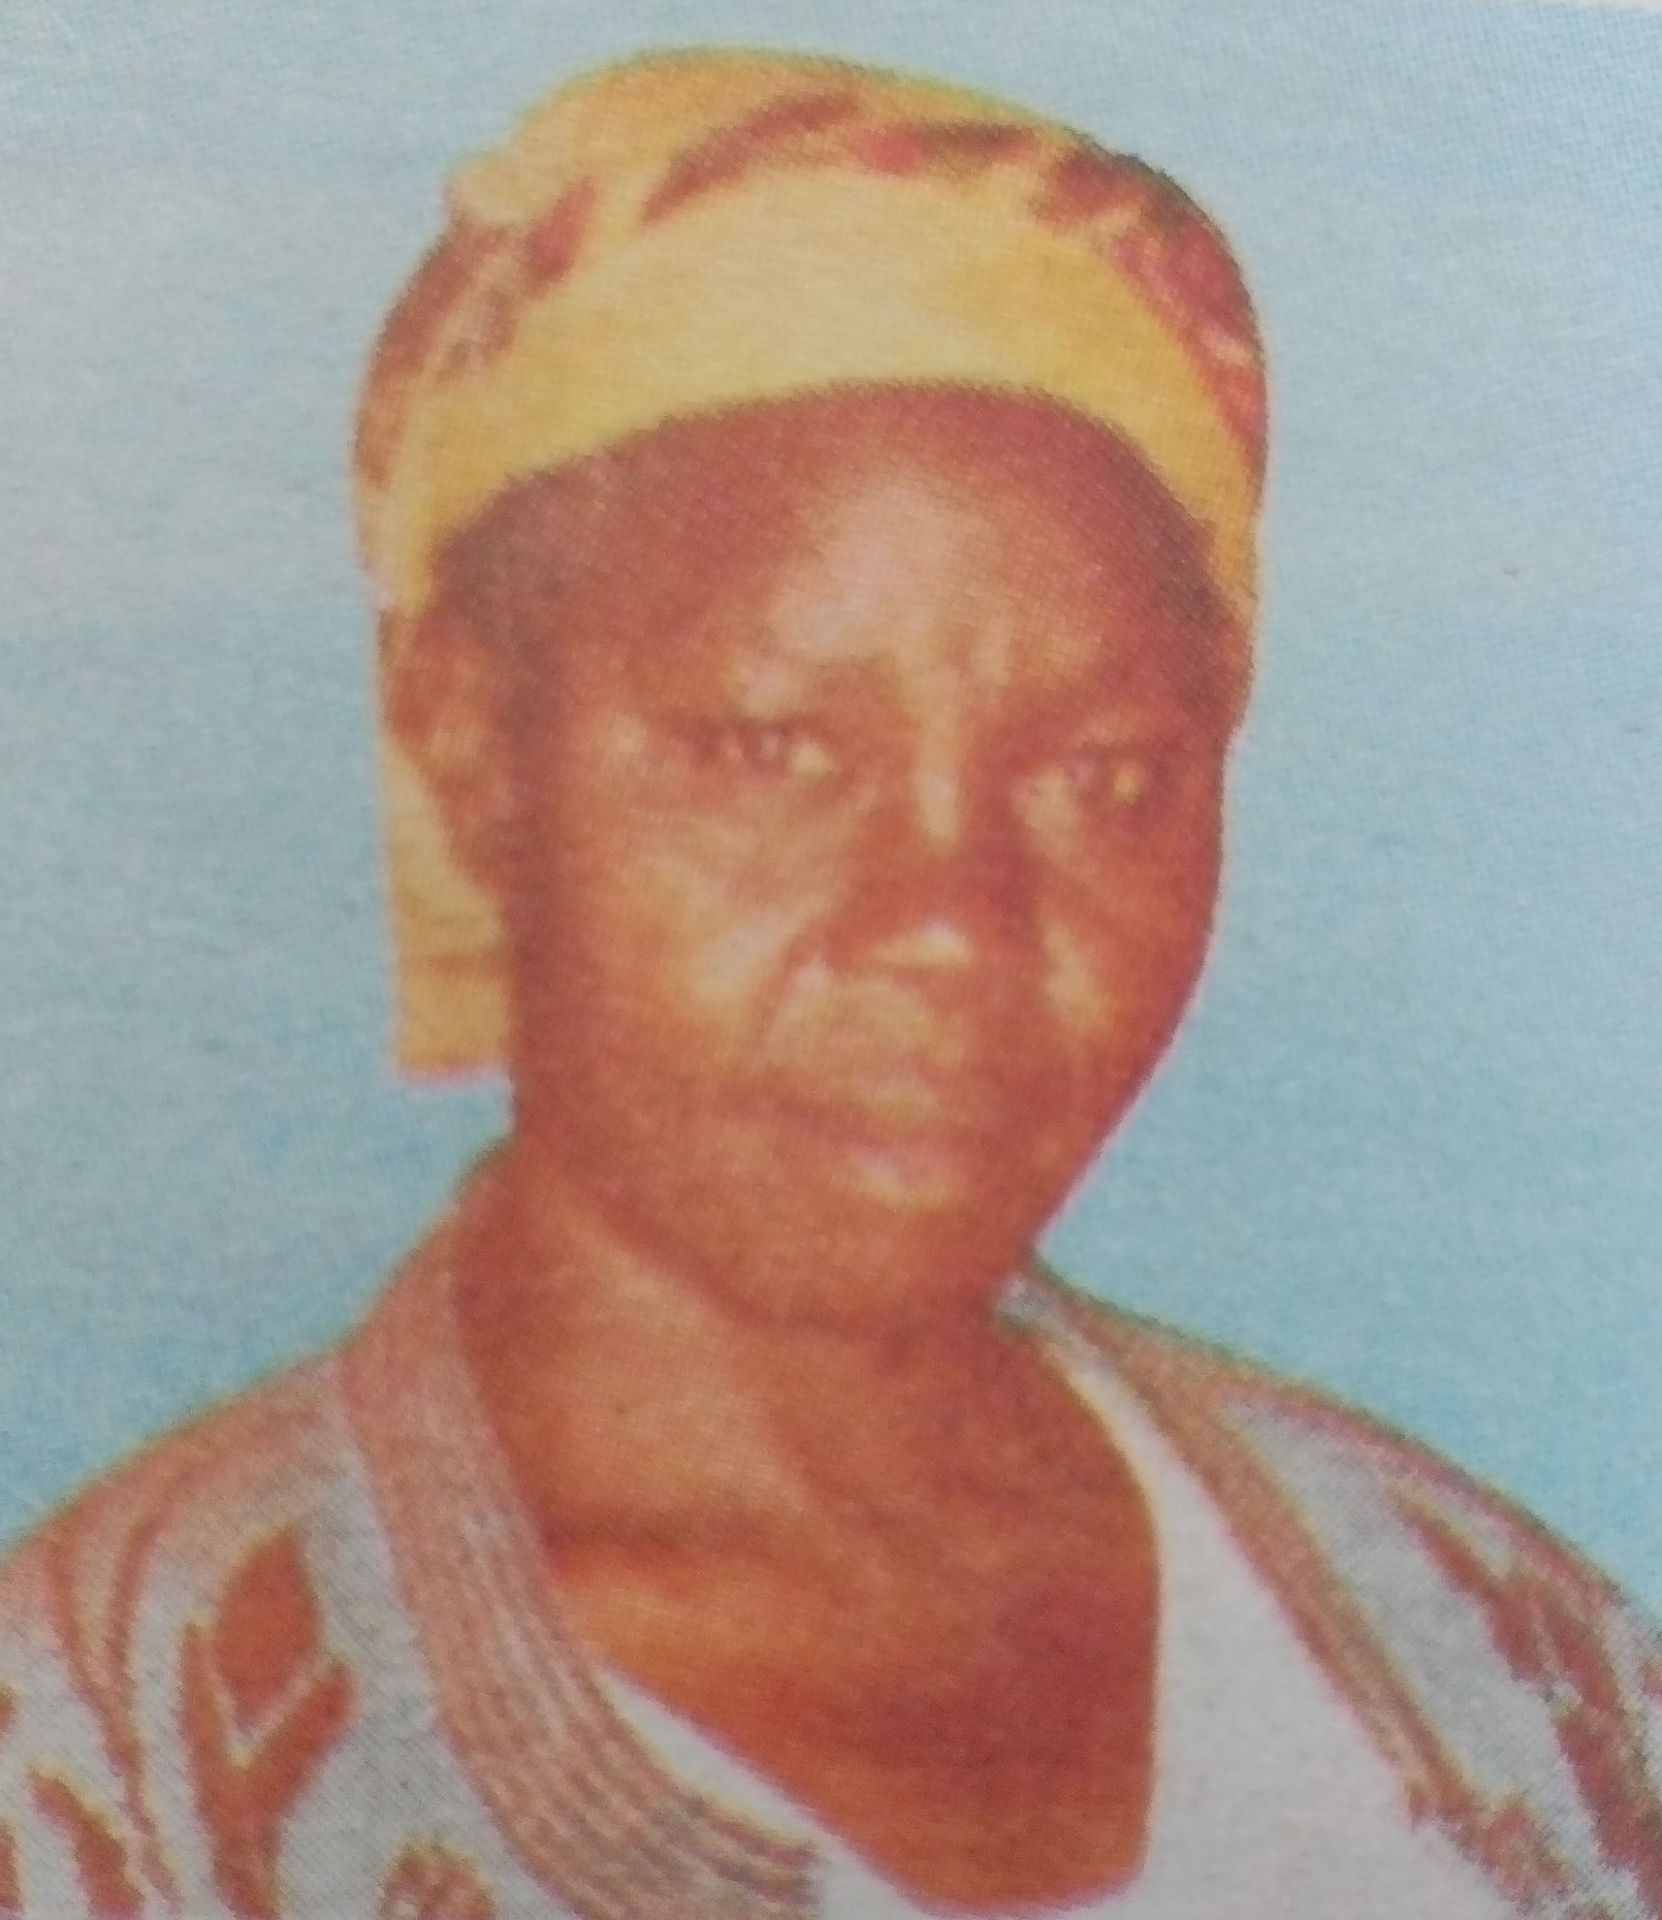 Obituary Image of Yucabeth Nyanchama Anyona